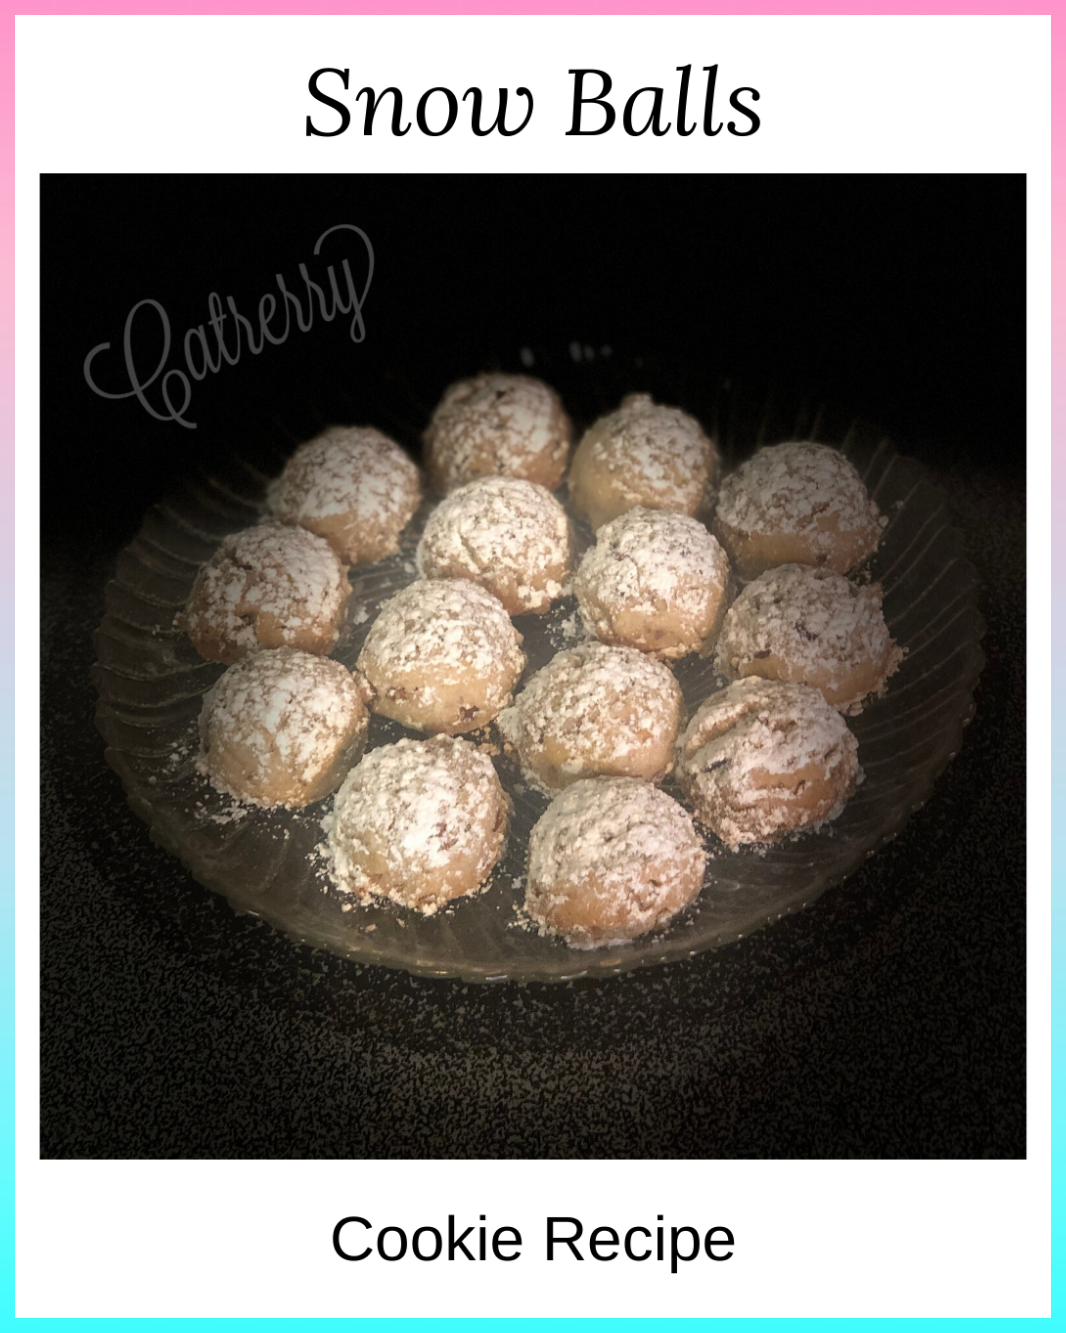 Snow Balls Cookie Recipe - Catrerry